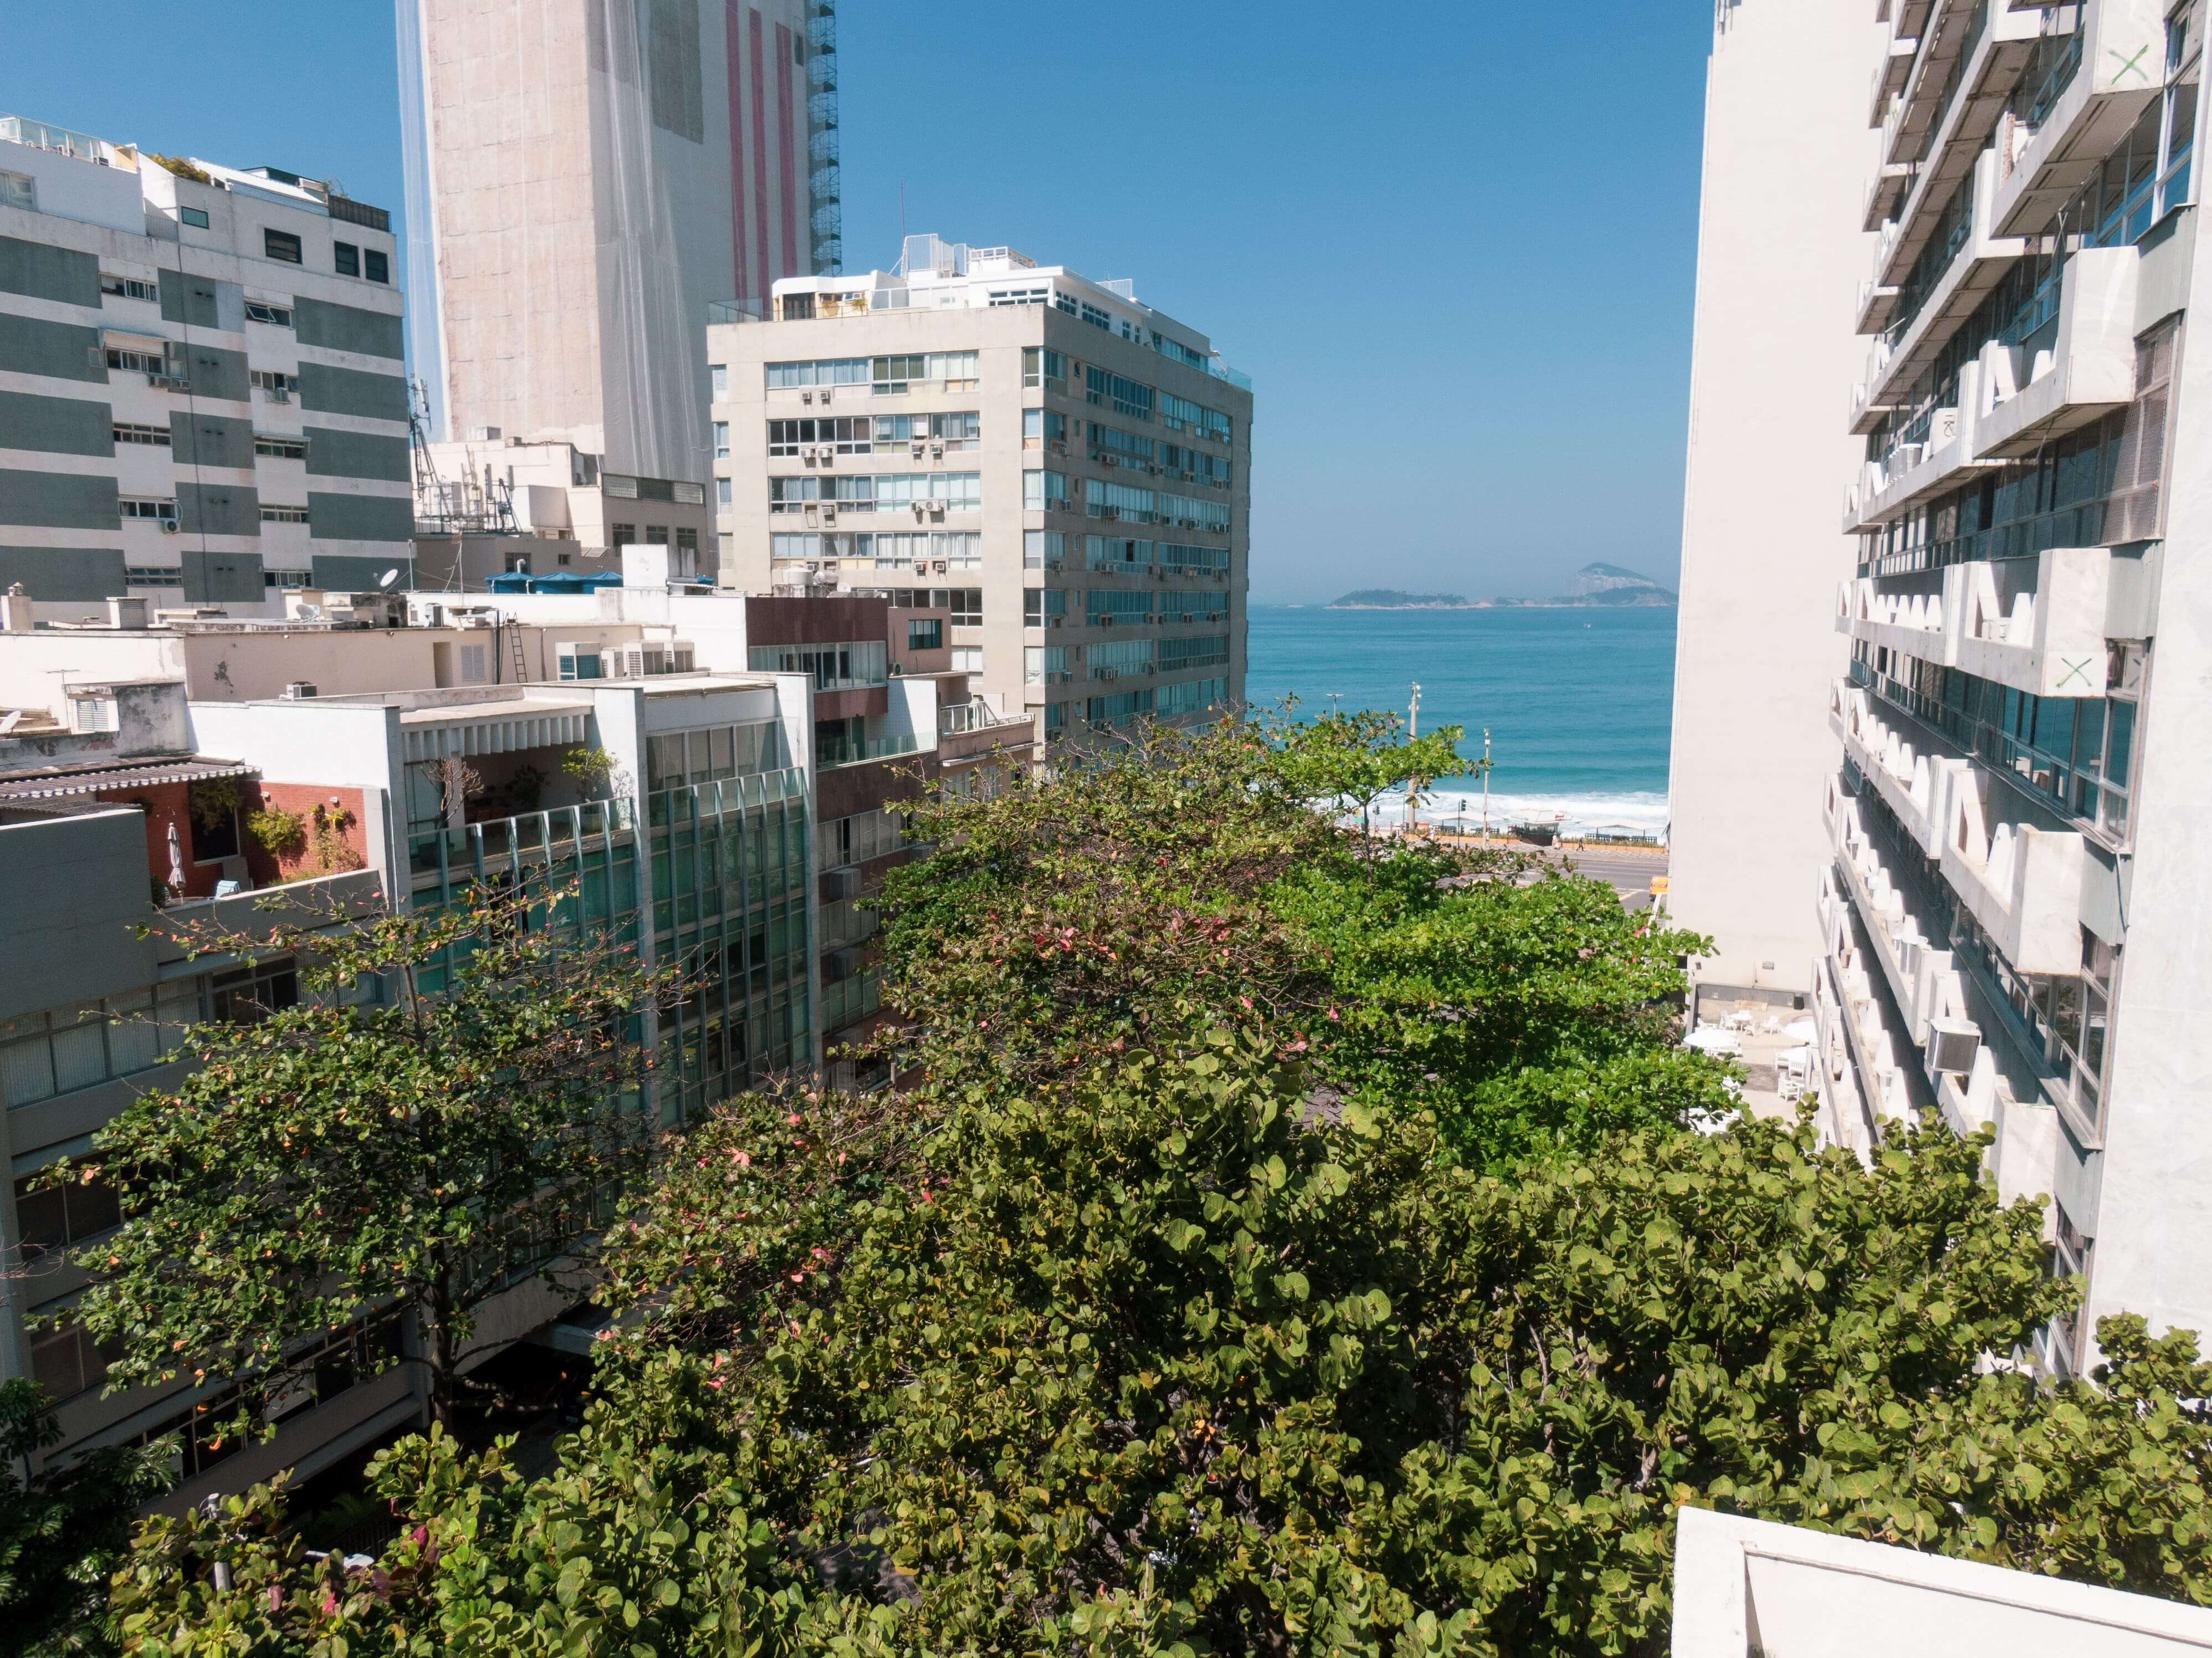 Capa Residencial Areia Mozak Leblon terá apartamentos com vista para a praia mais charmosa do Brasil